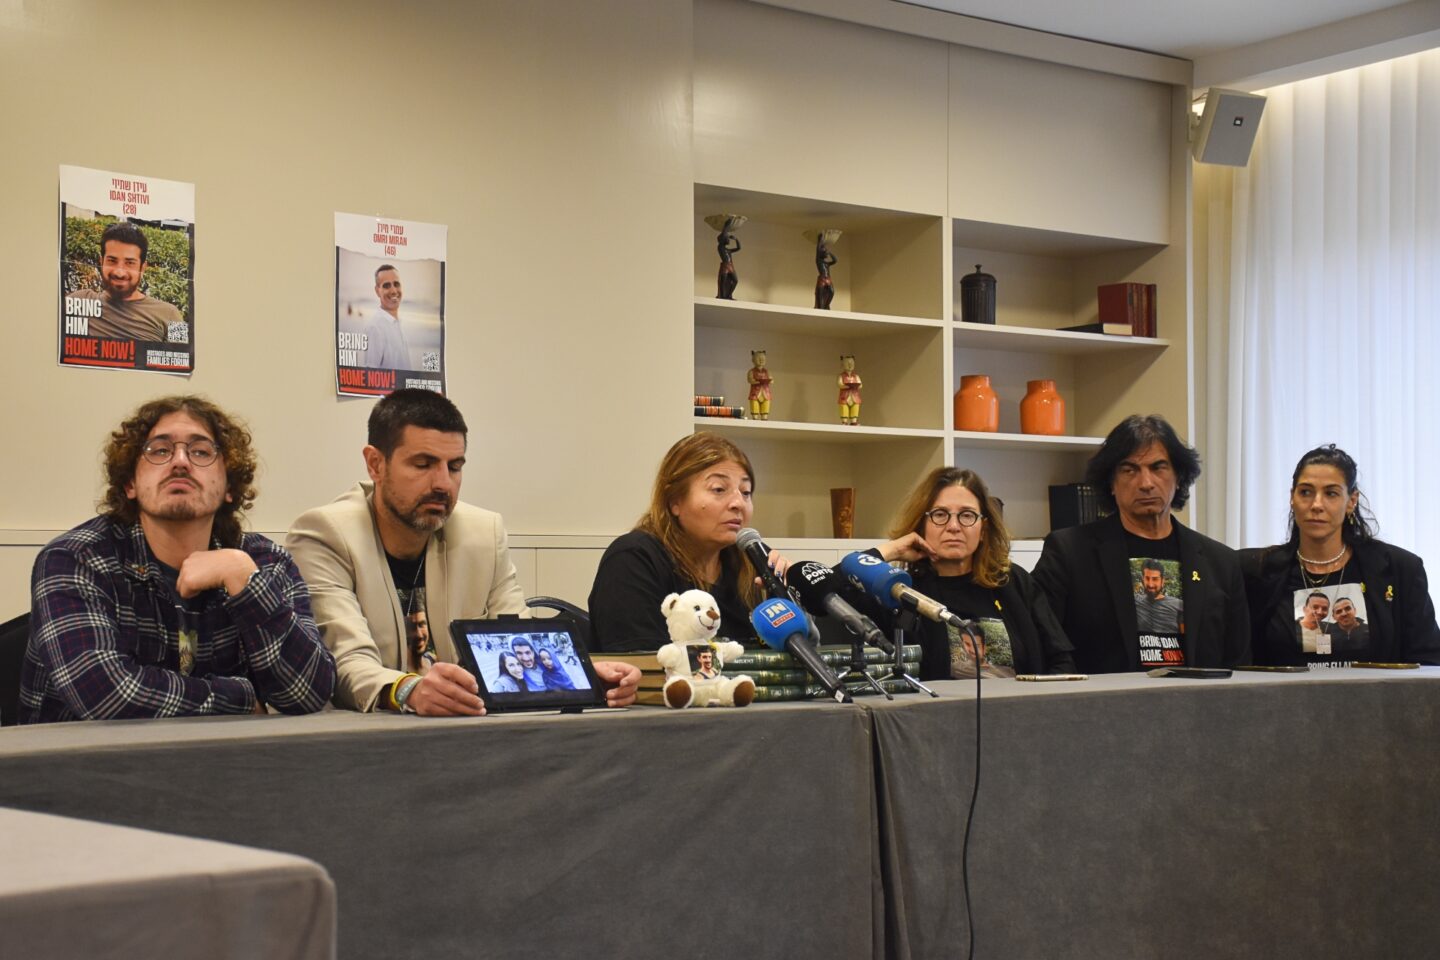 Familiares de luso-israelitas reféns em Gaza apelam à ajuda portuguesa. "Ainda estamos presos no dia 7 de outubro"